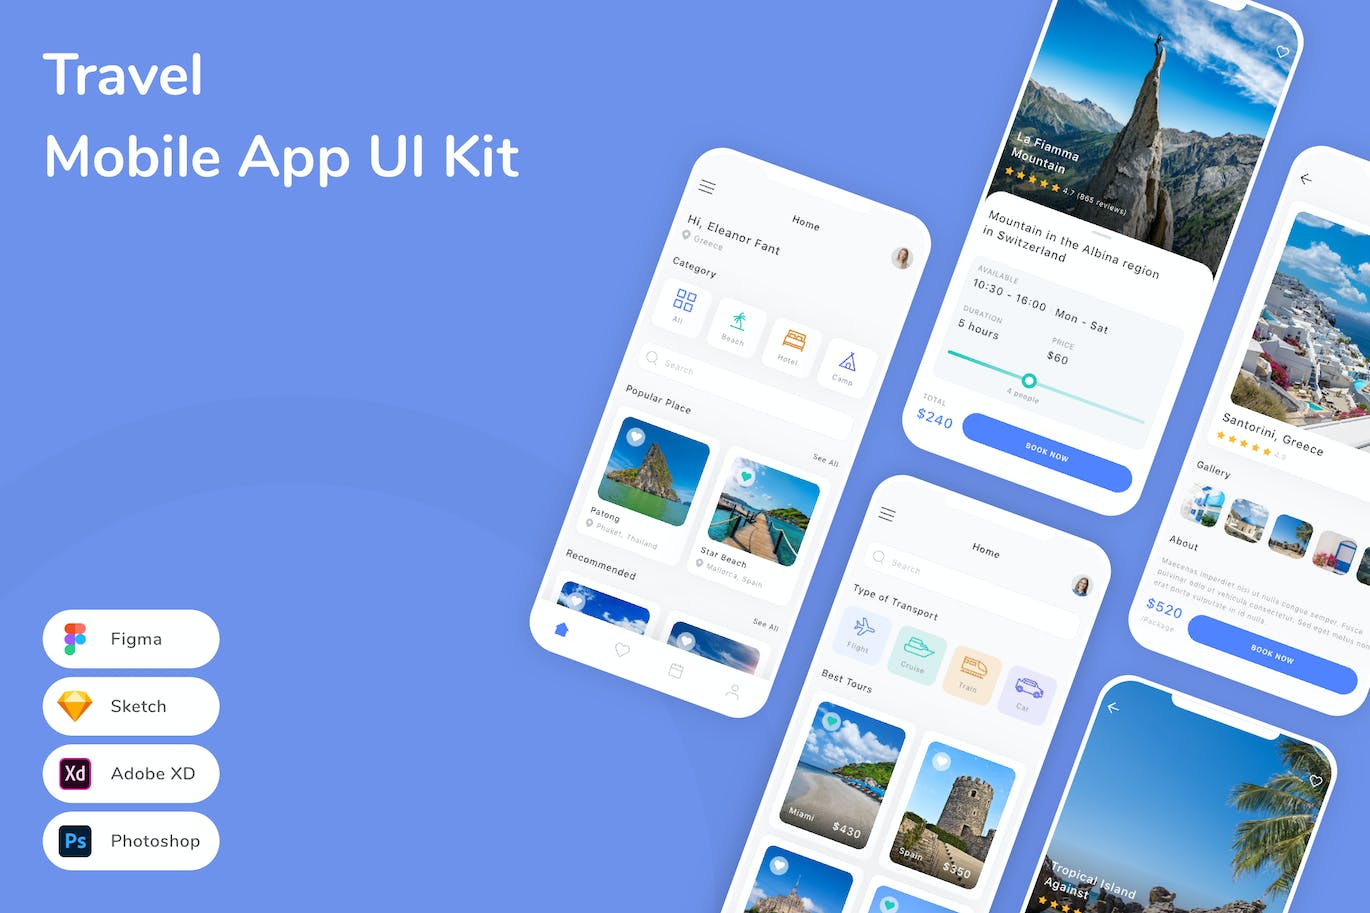 出行旅游App应用程序UI工具包素材 Travel Mobile App UI Kit APP UI 第1张